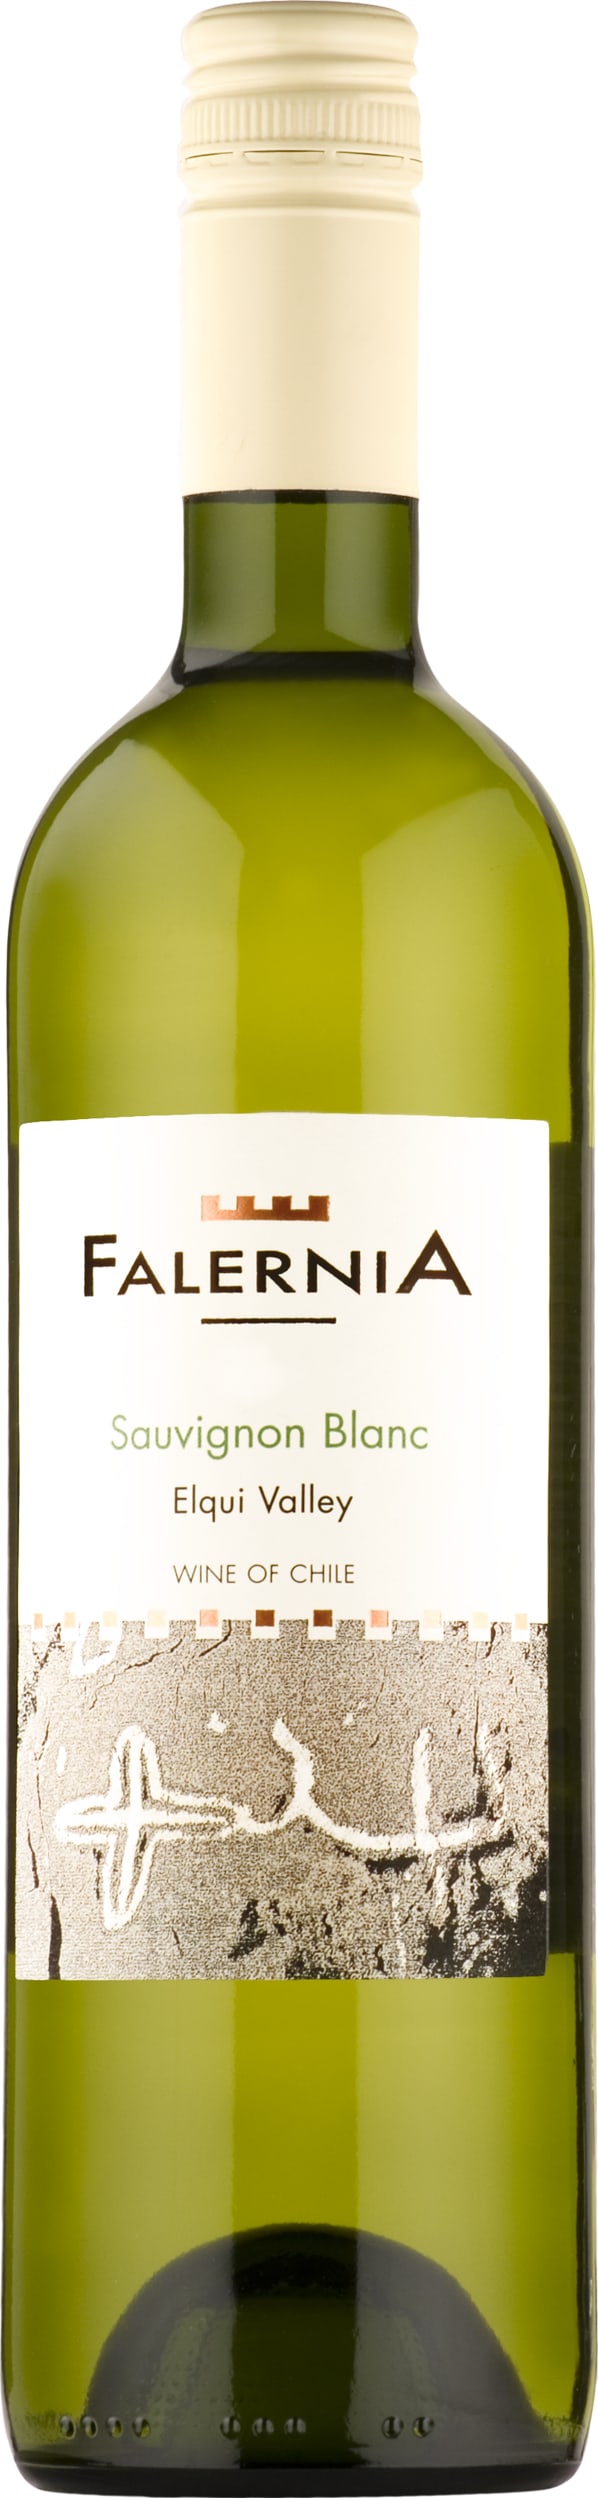 Vina Falernia Sauvignon Blanc?Reserva 2021 6x75cl - Just Wines 